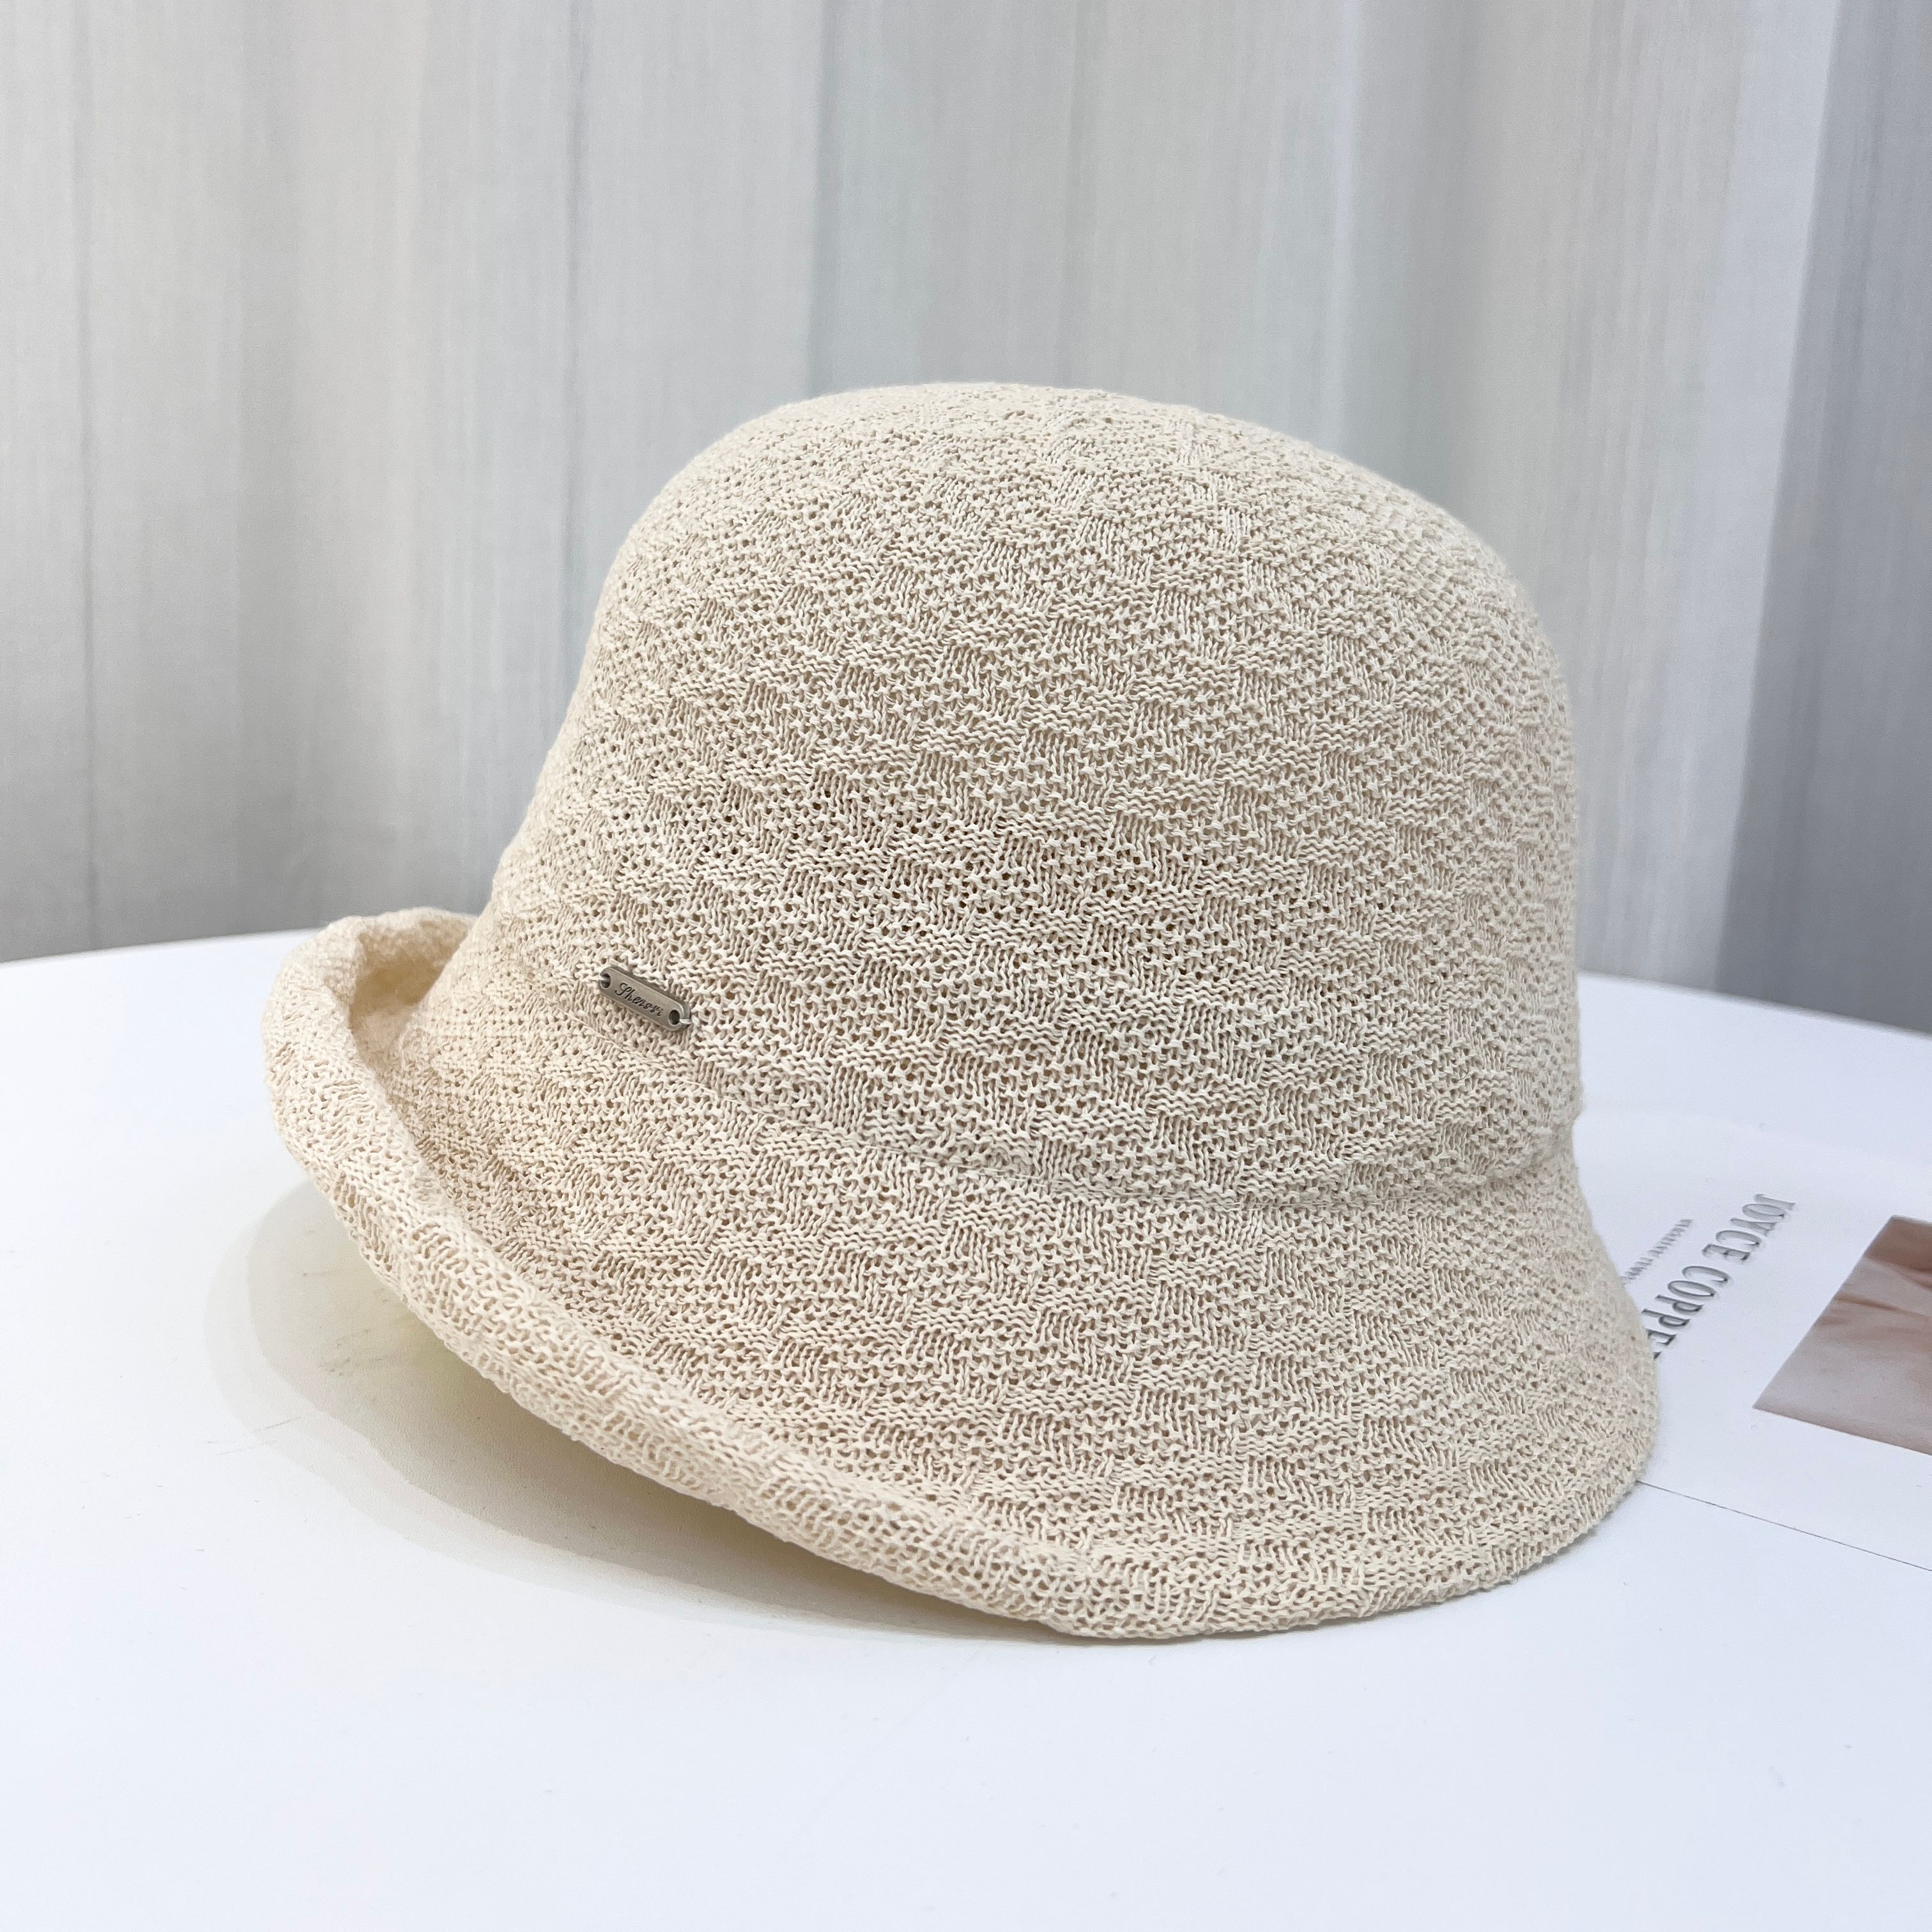 新款日本和纸帽子女小卷檐俏气太阳穴帽礼帽显脸小可折叠防紫外线